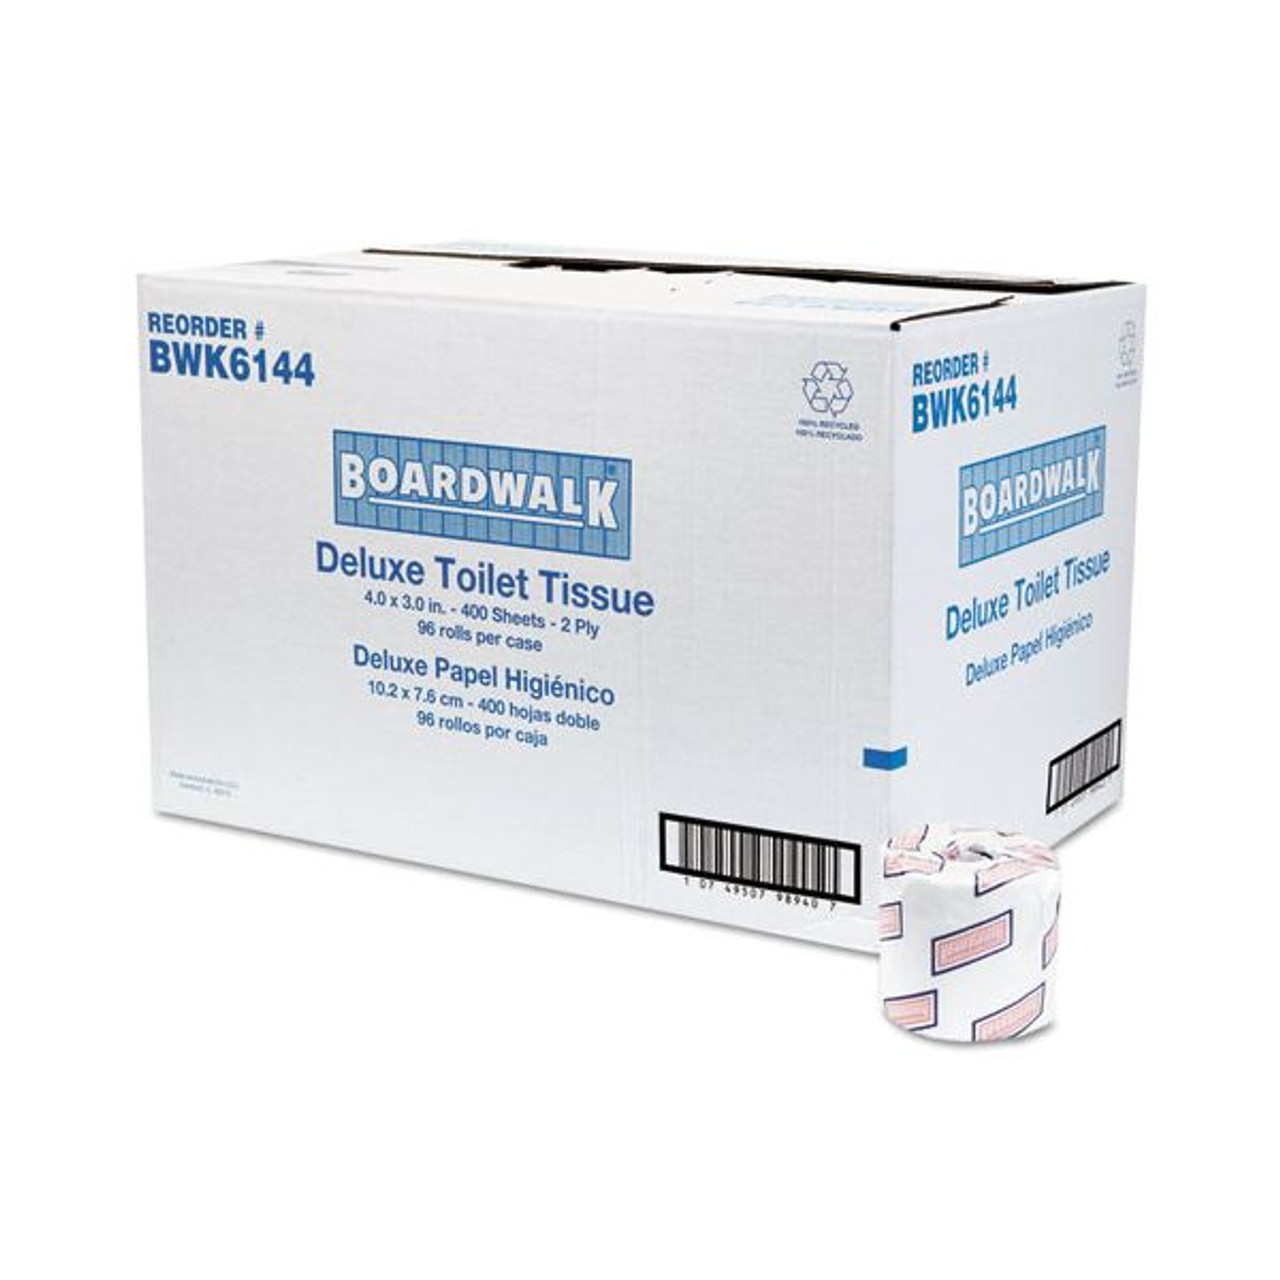 Boardwalk Toilet Tissue (96 roll case)